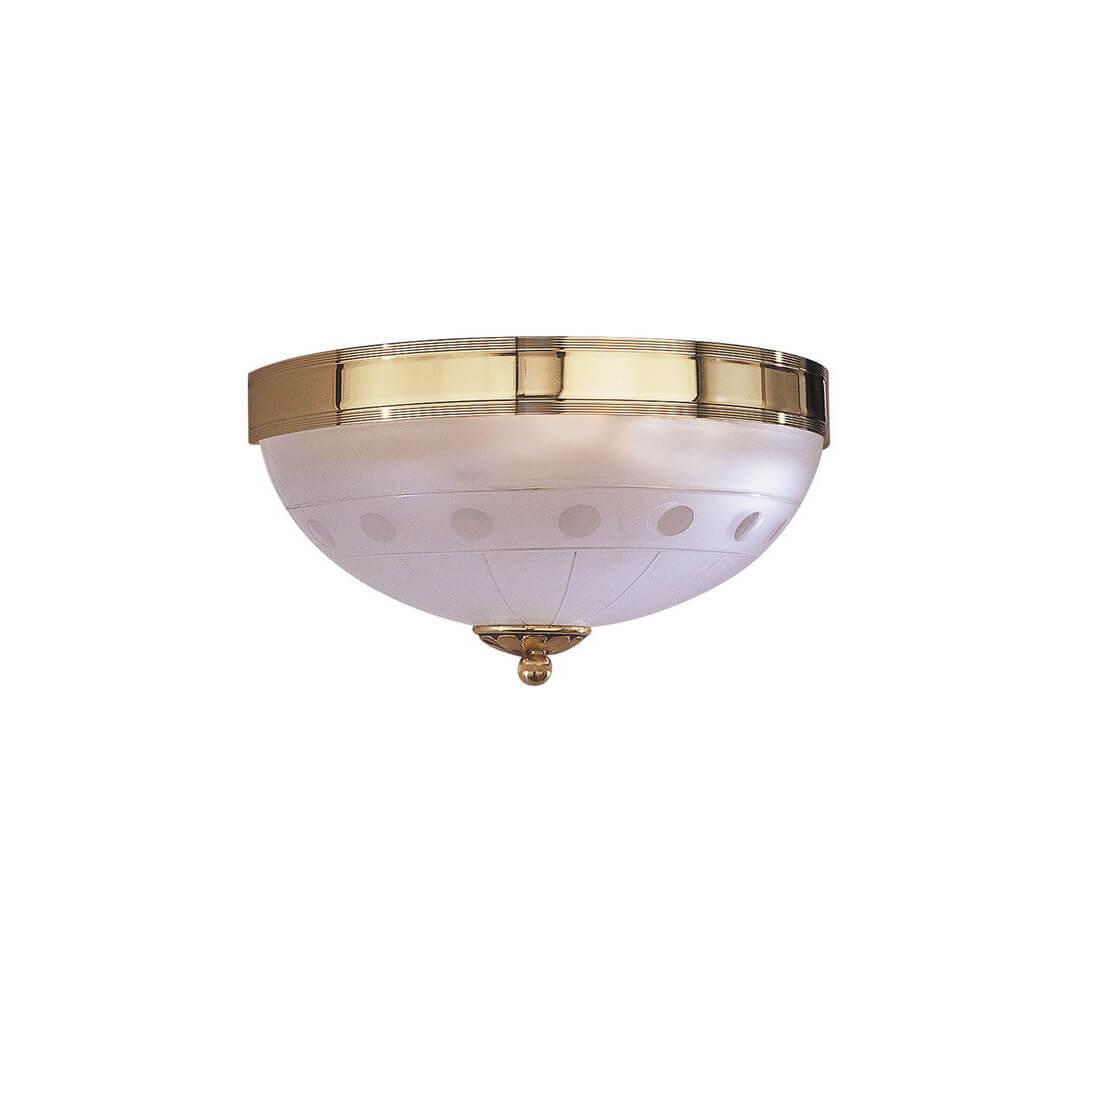 Настенный светильник Reccagni Angelo A.2334/2 настенный смеситель bronze de luxe